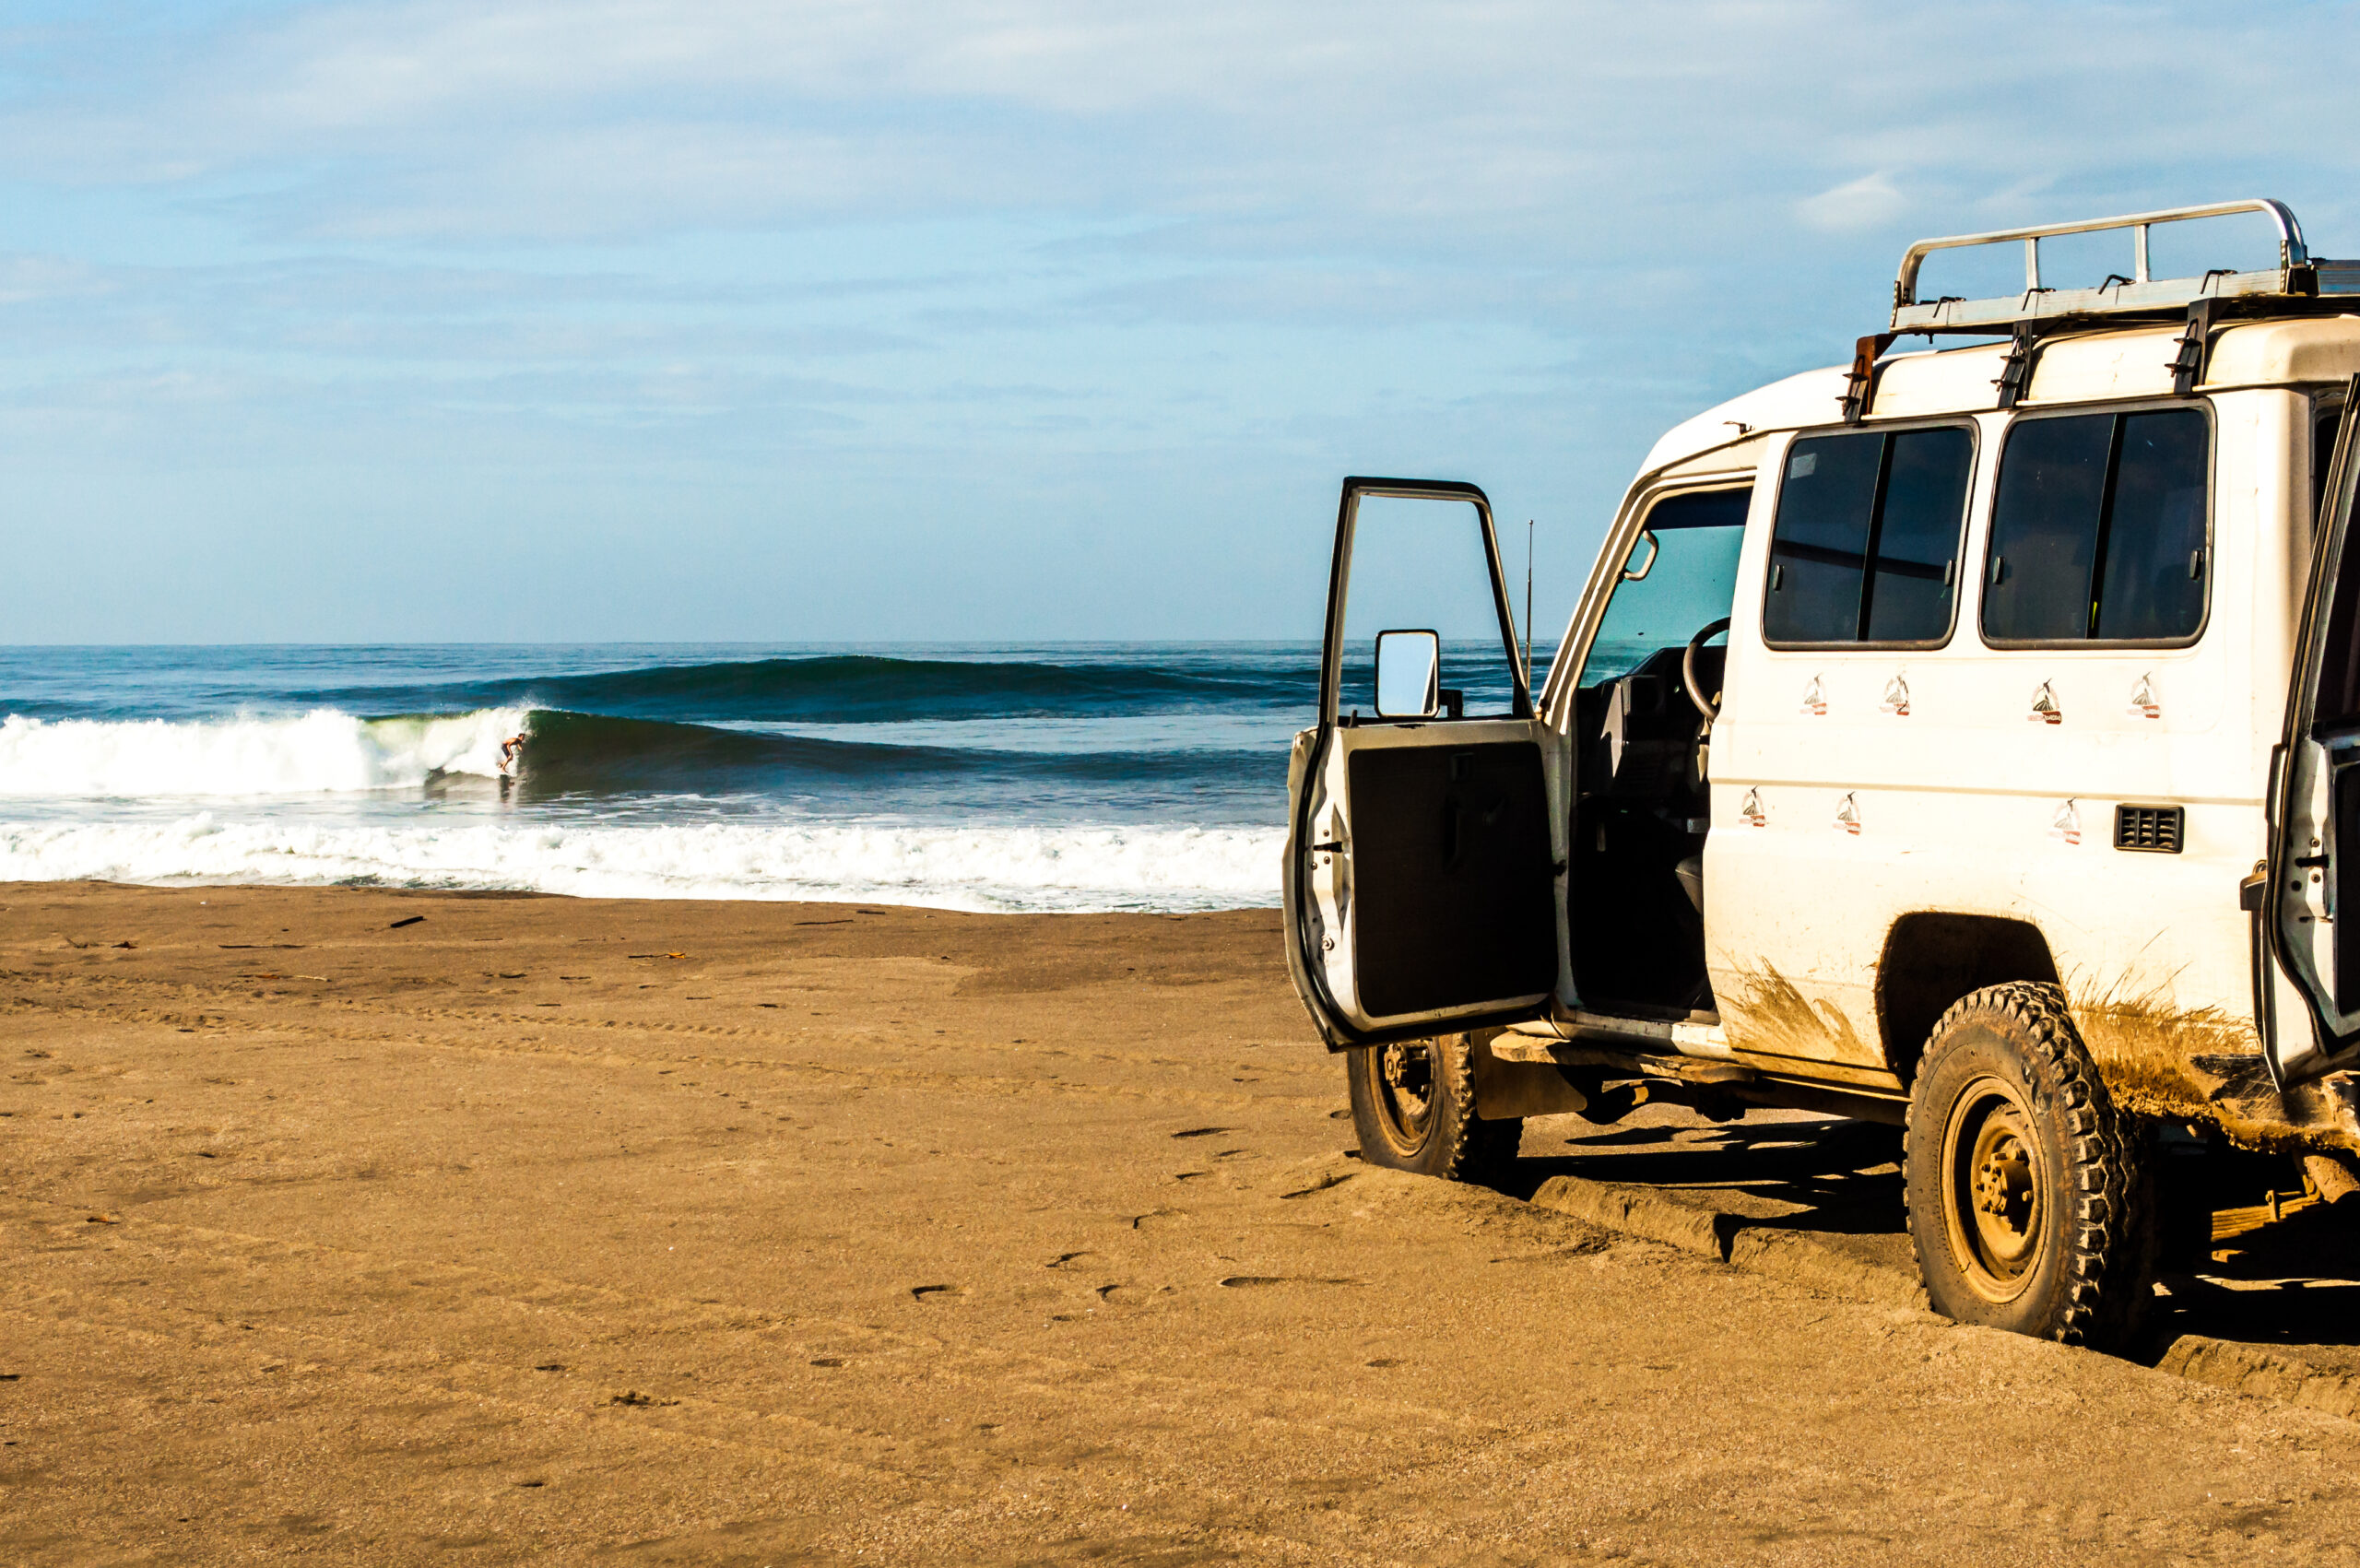 Anuncio de servicio público: Los filmadores de surf no son bienvenidos en Nicaragua